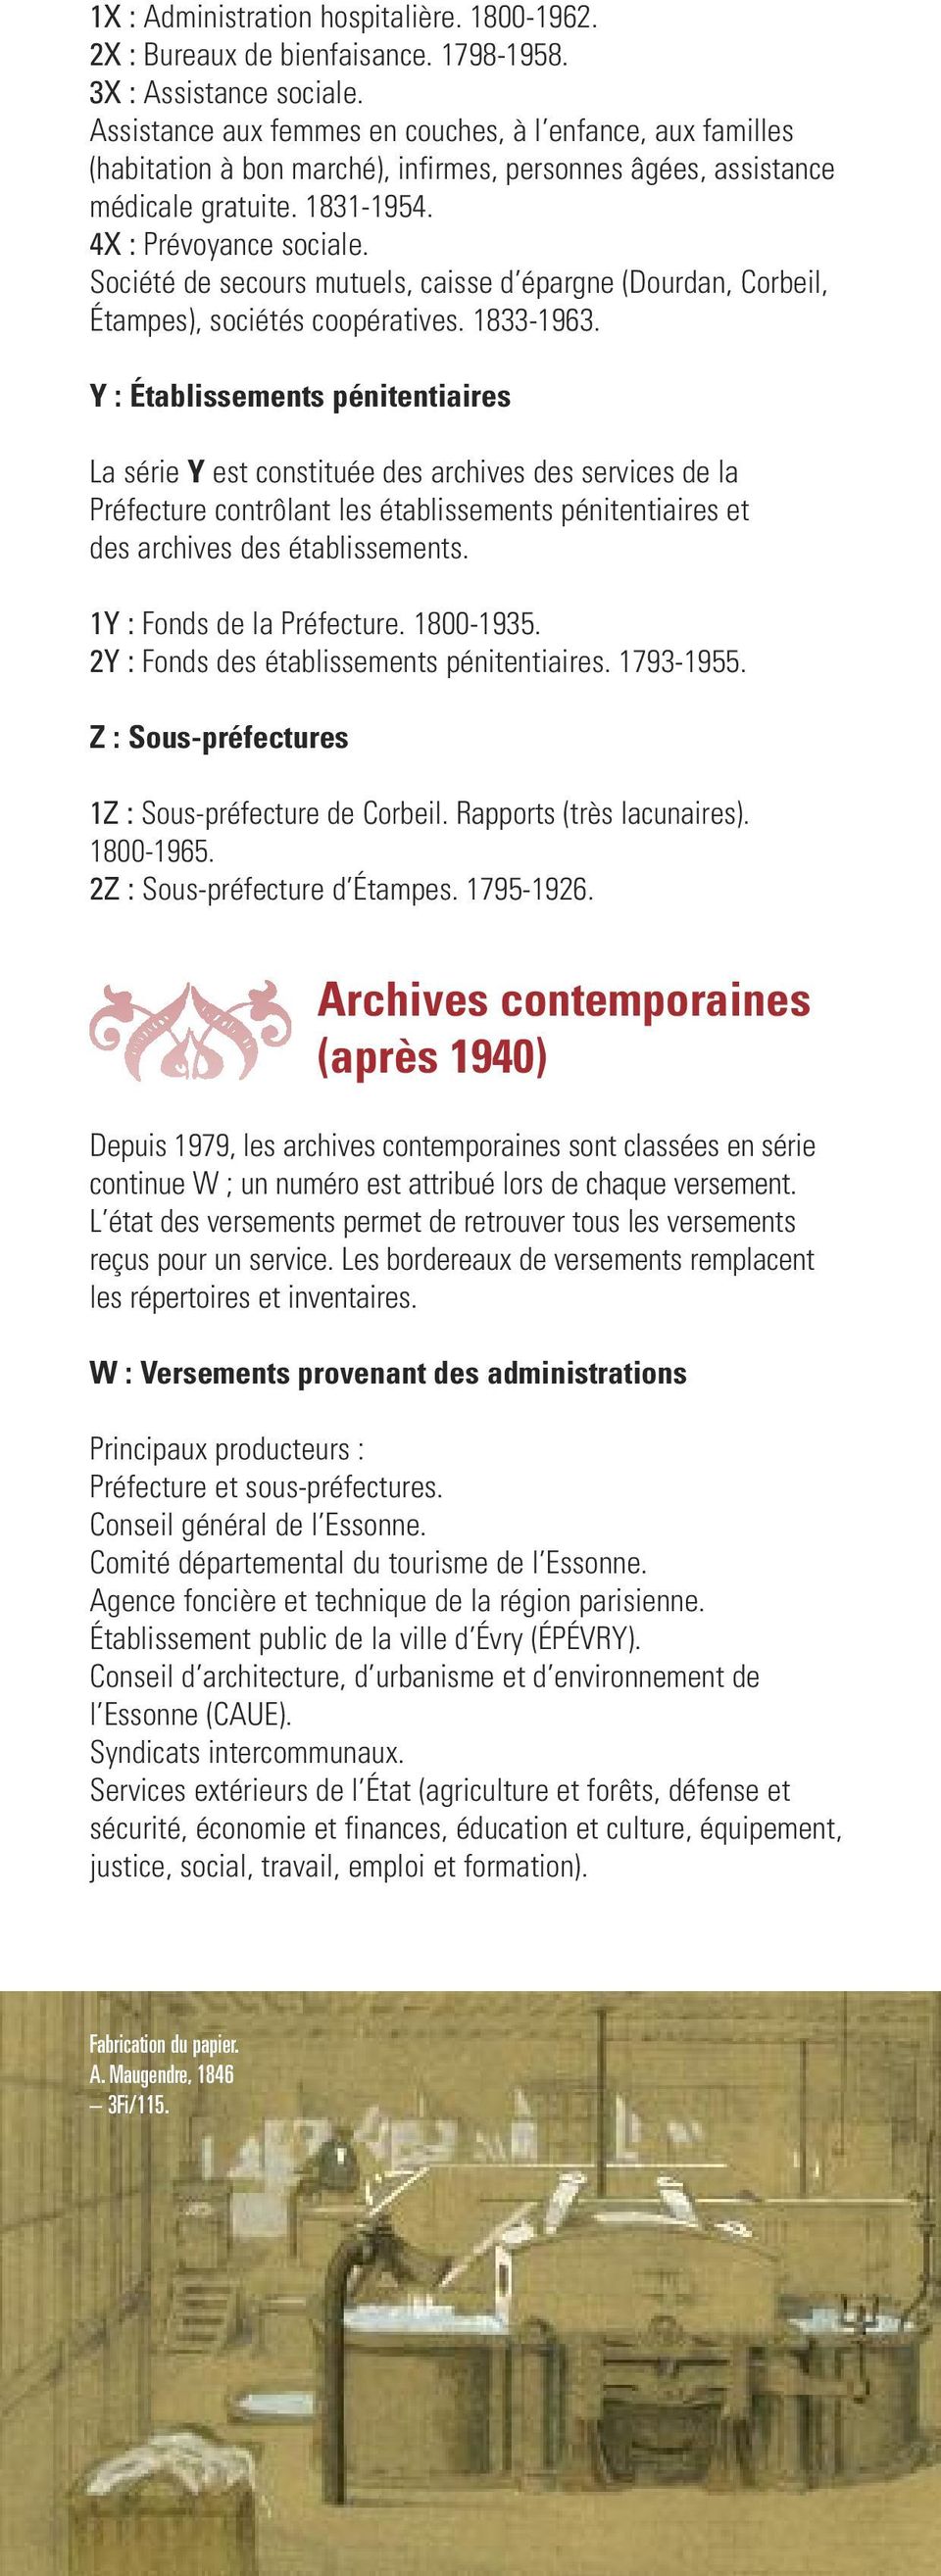 Société de secours mutuels, caisse d épargne (Dourdan, Corbeil, Étampes), sociétés coopératives. 1833-1963.